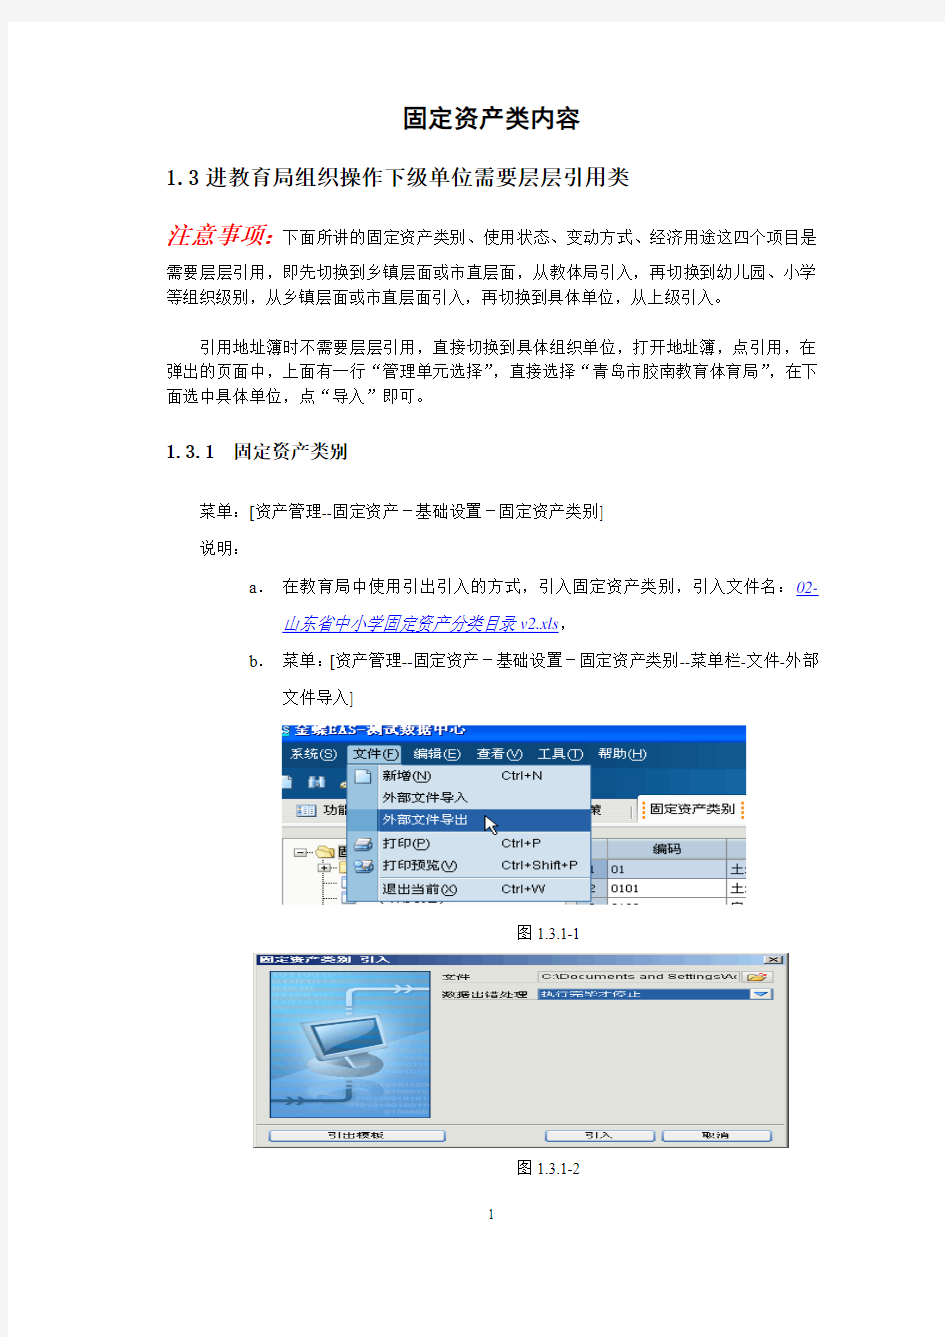 金蝶EAS固定资产管理系统(用户版)(1).